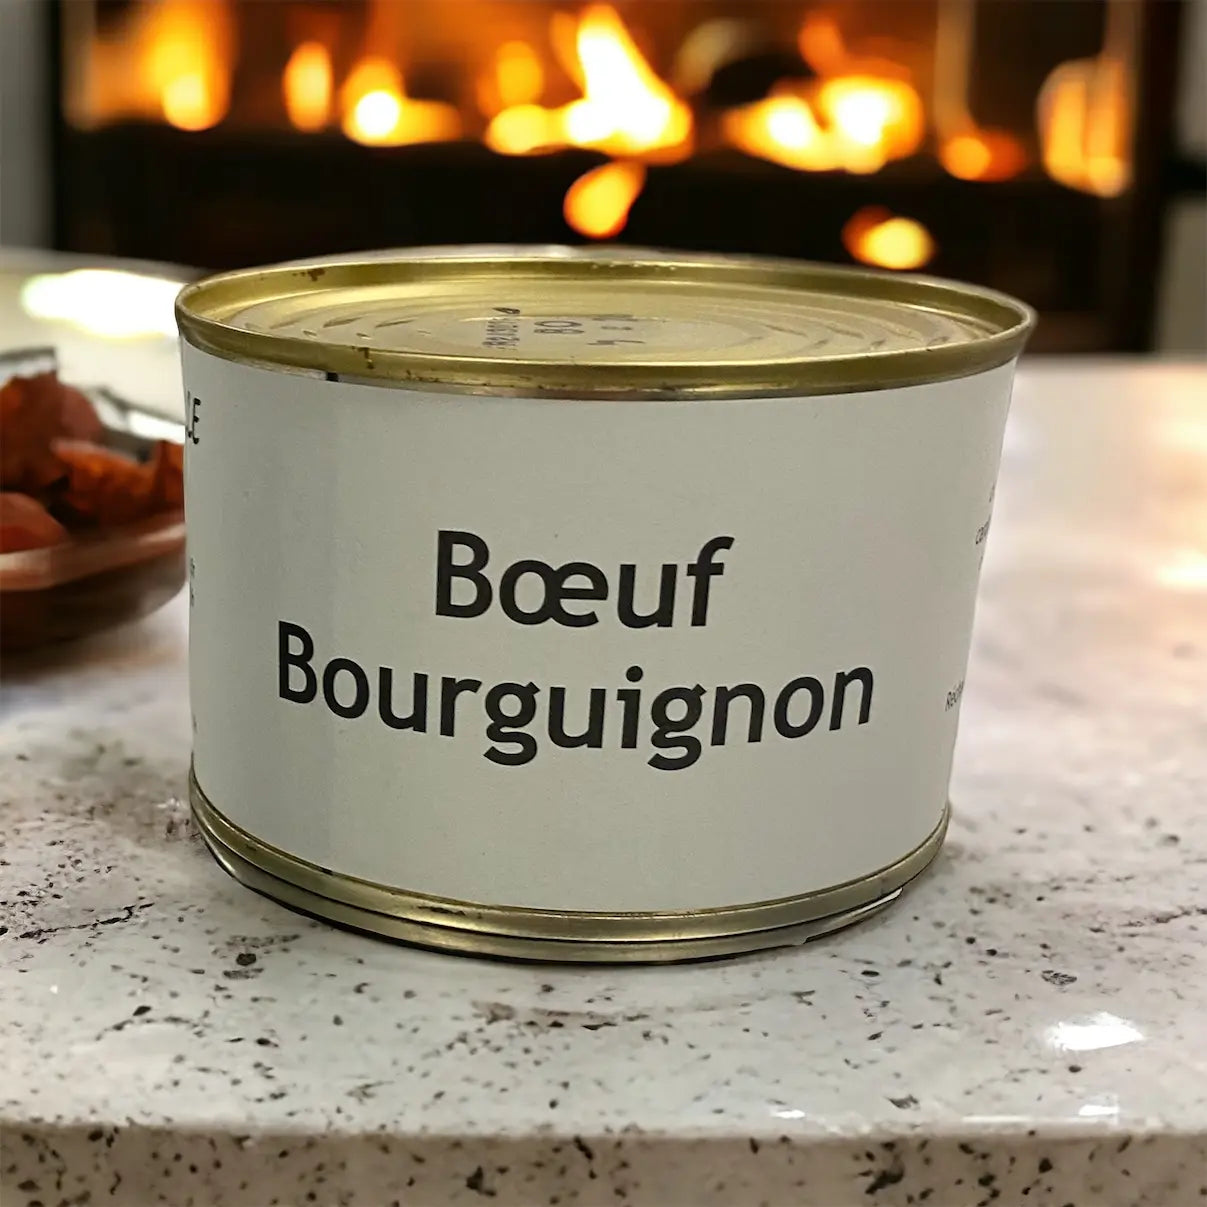 Boeuf bouguignon vendu par Jm Monterroir